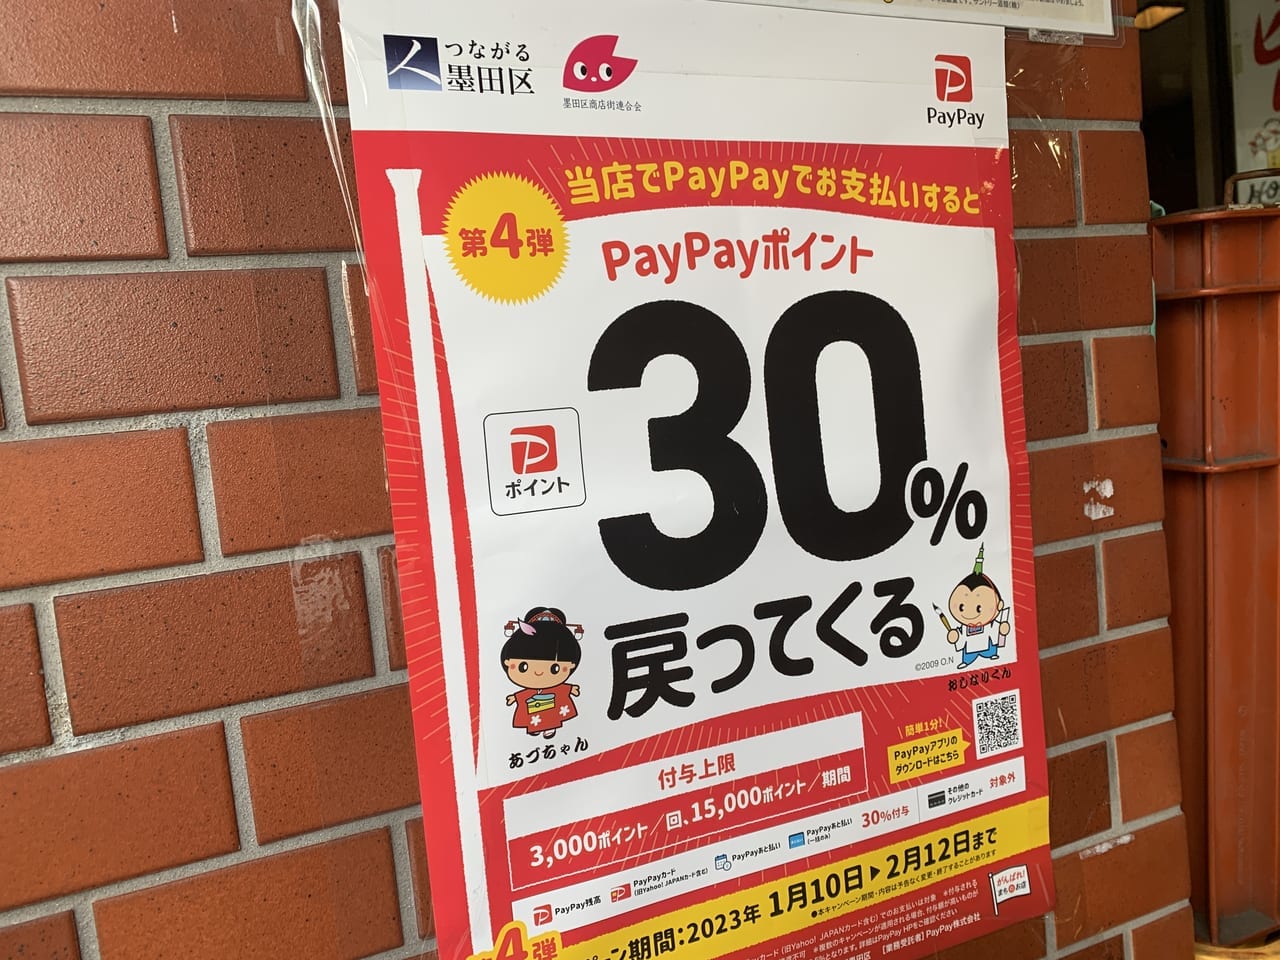 PayPay4弾ポスター